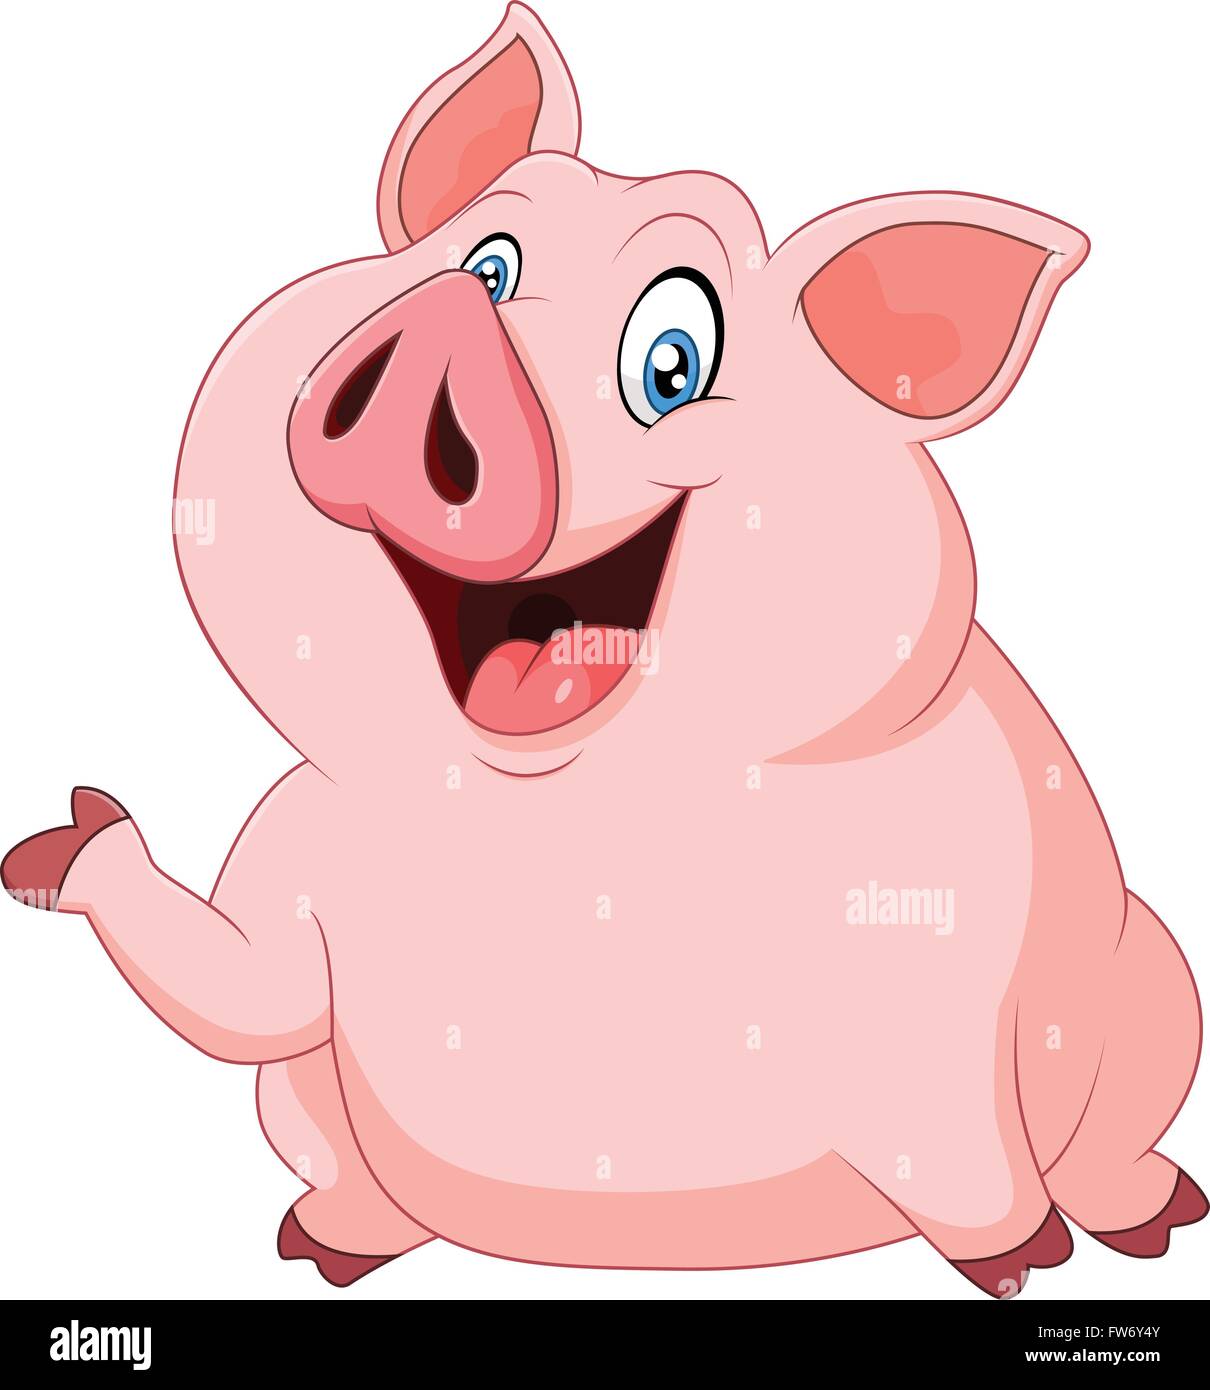 Cute fat pig présentant isolé sur fond blanc Illustration de Vecteur